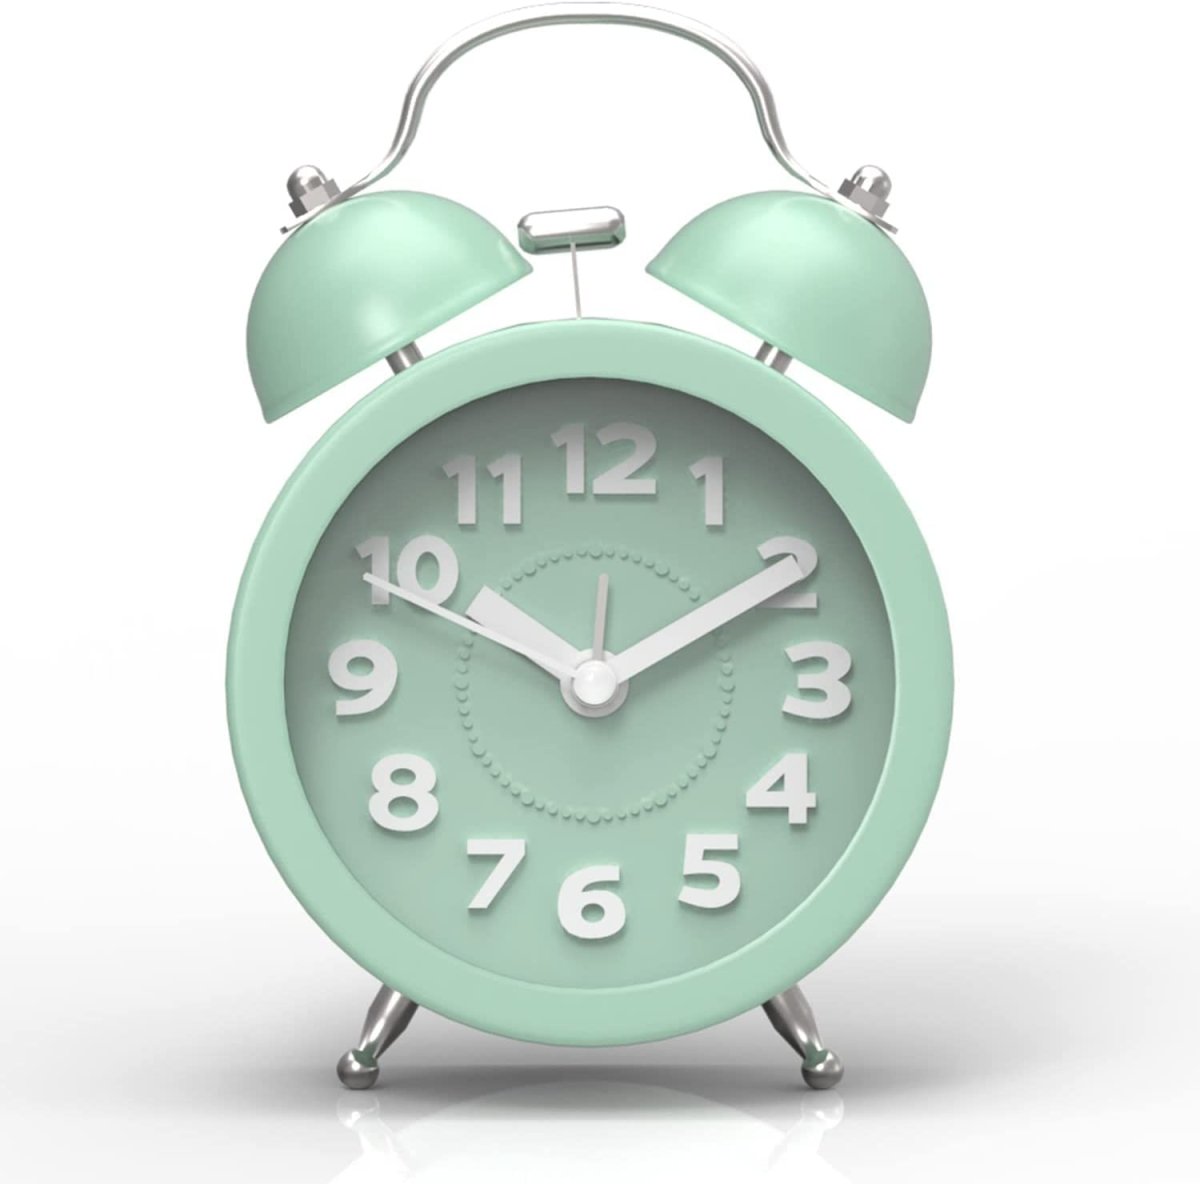 Unique Alarm Clocks